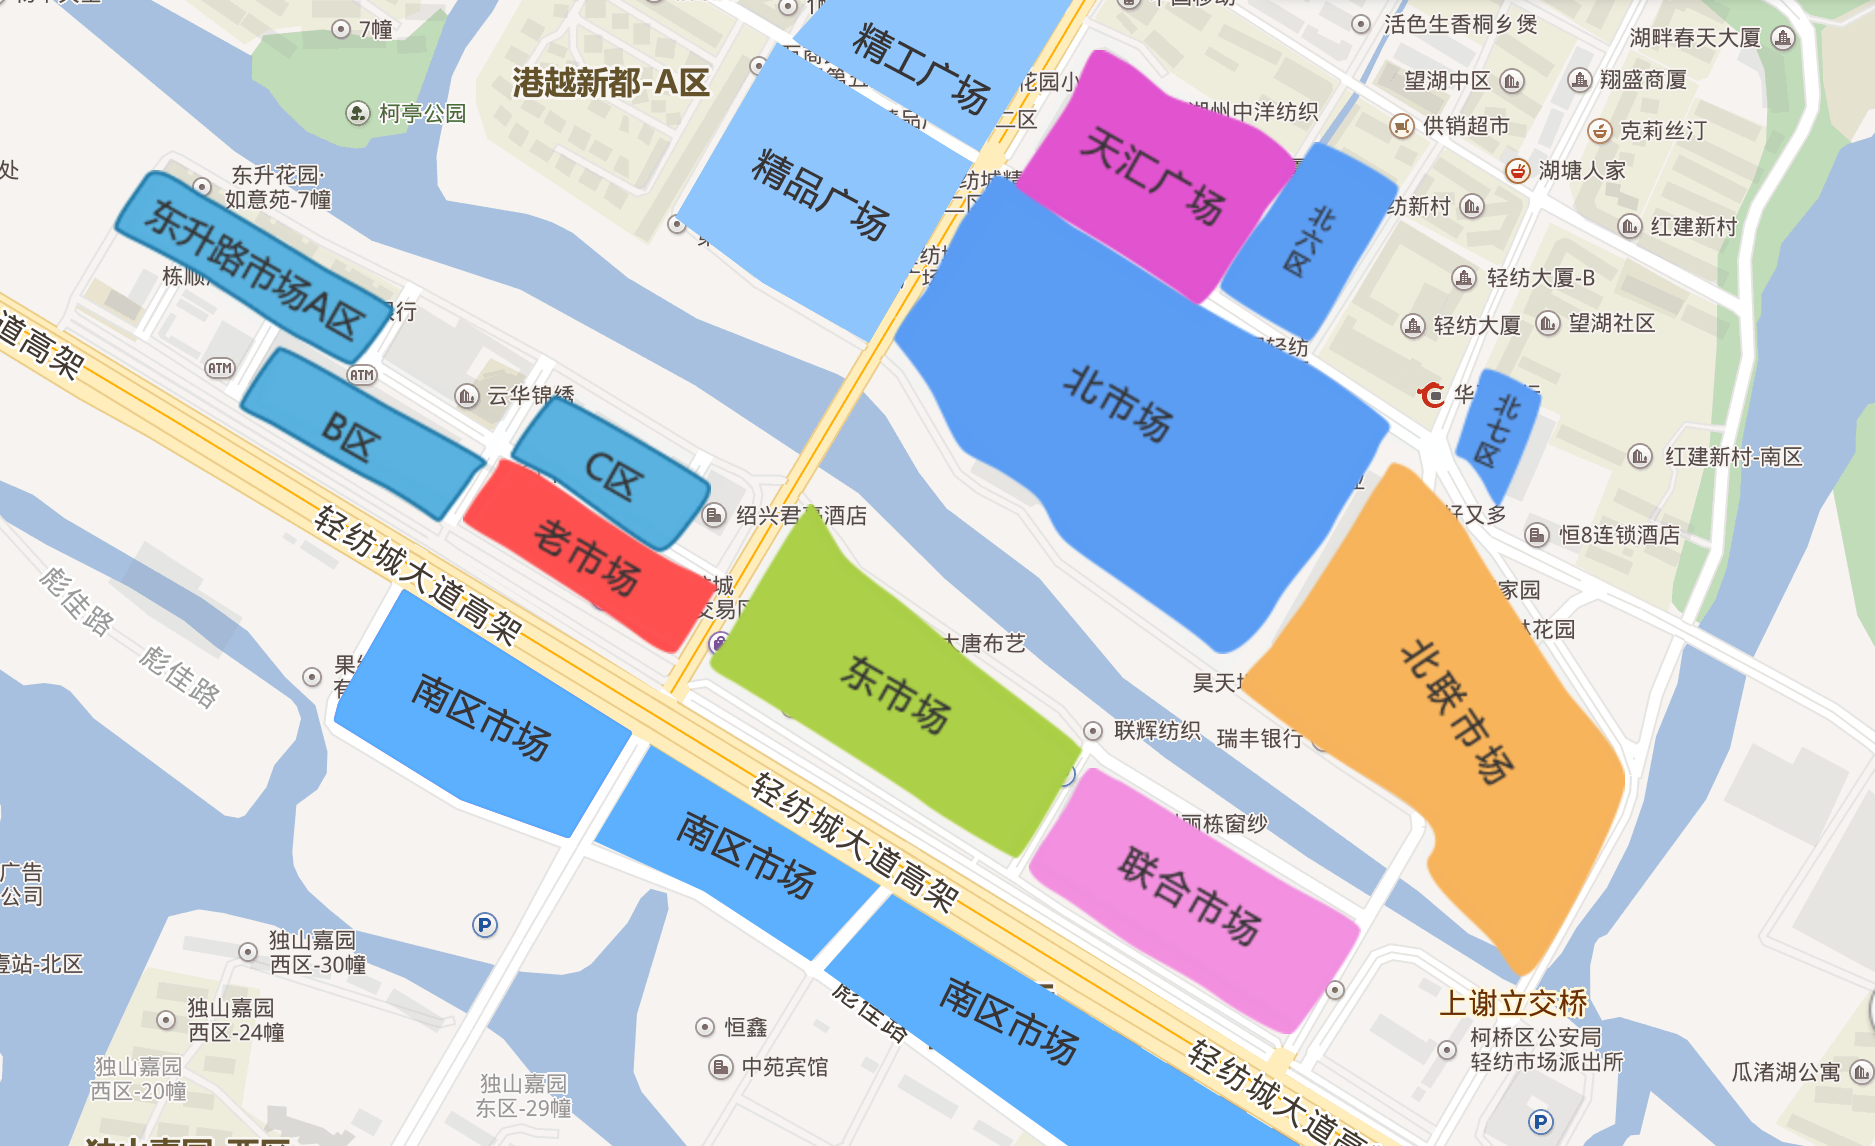 中大布匹市场搬离广州，30万纺织人走到十字路口-36氪